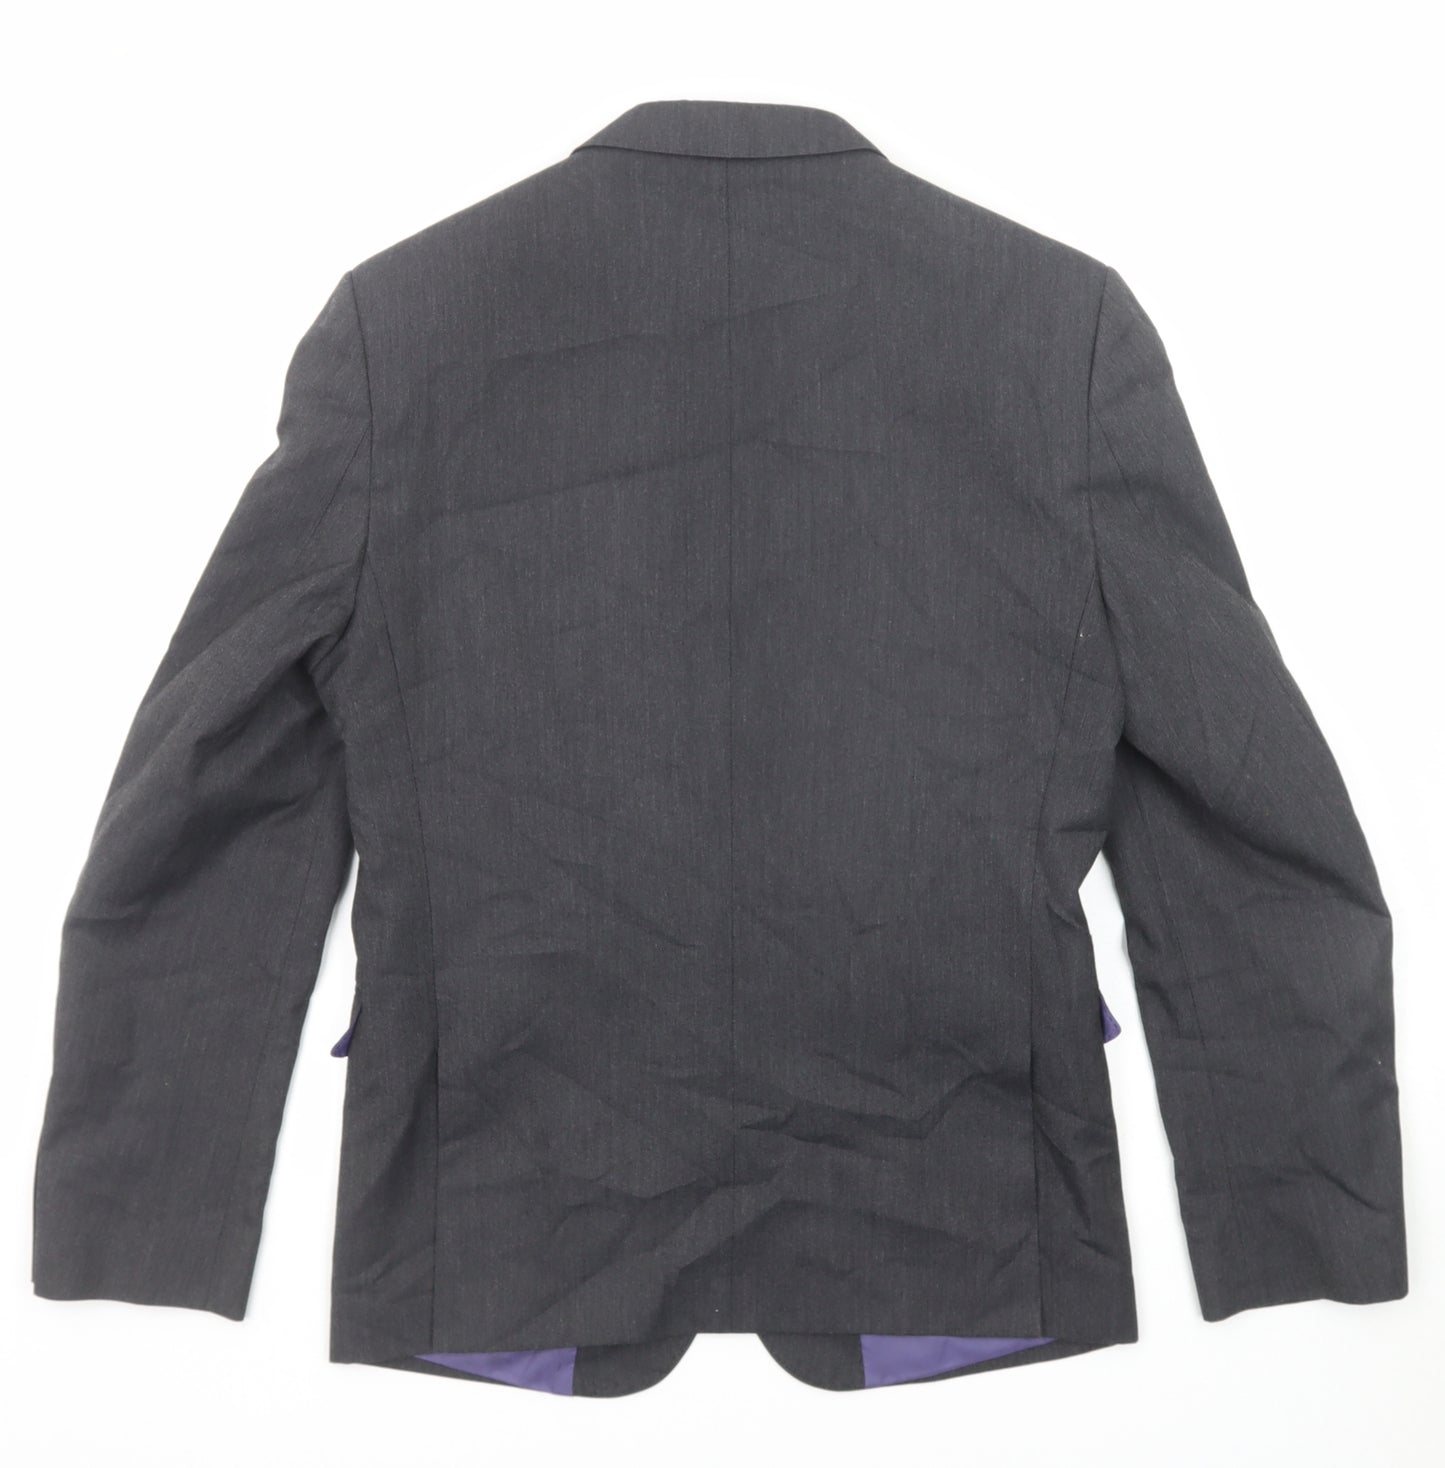 Marks and Spencer Mens Grey Polyester Jacket Suit Jacket Size 36 Regular